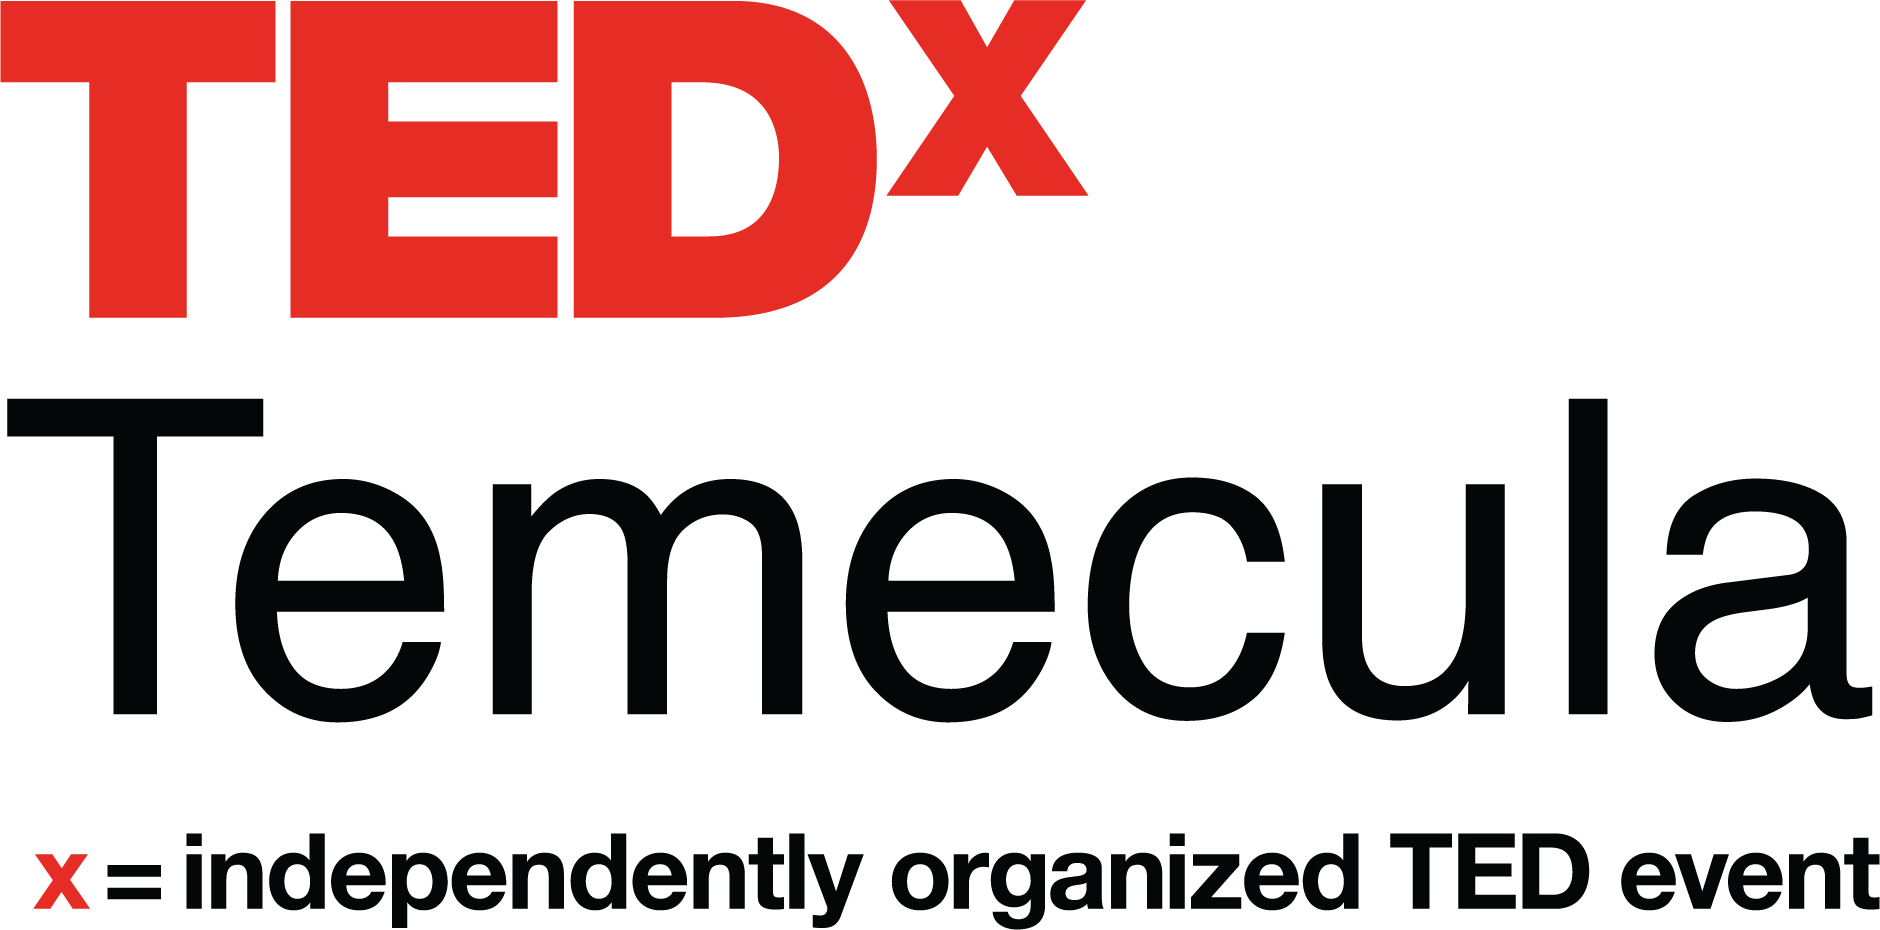 TEDxTemecula